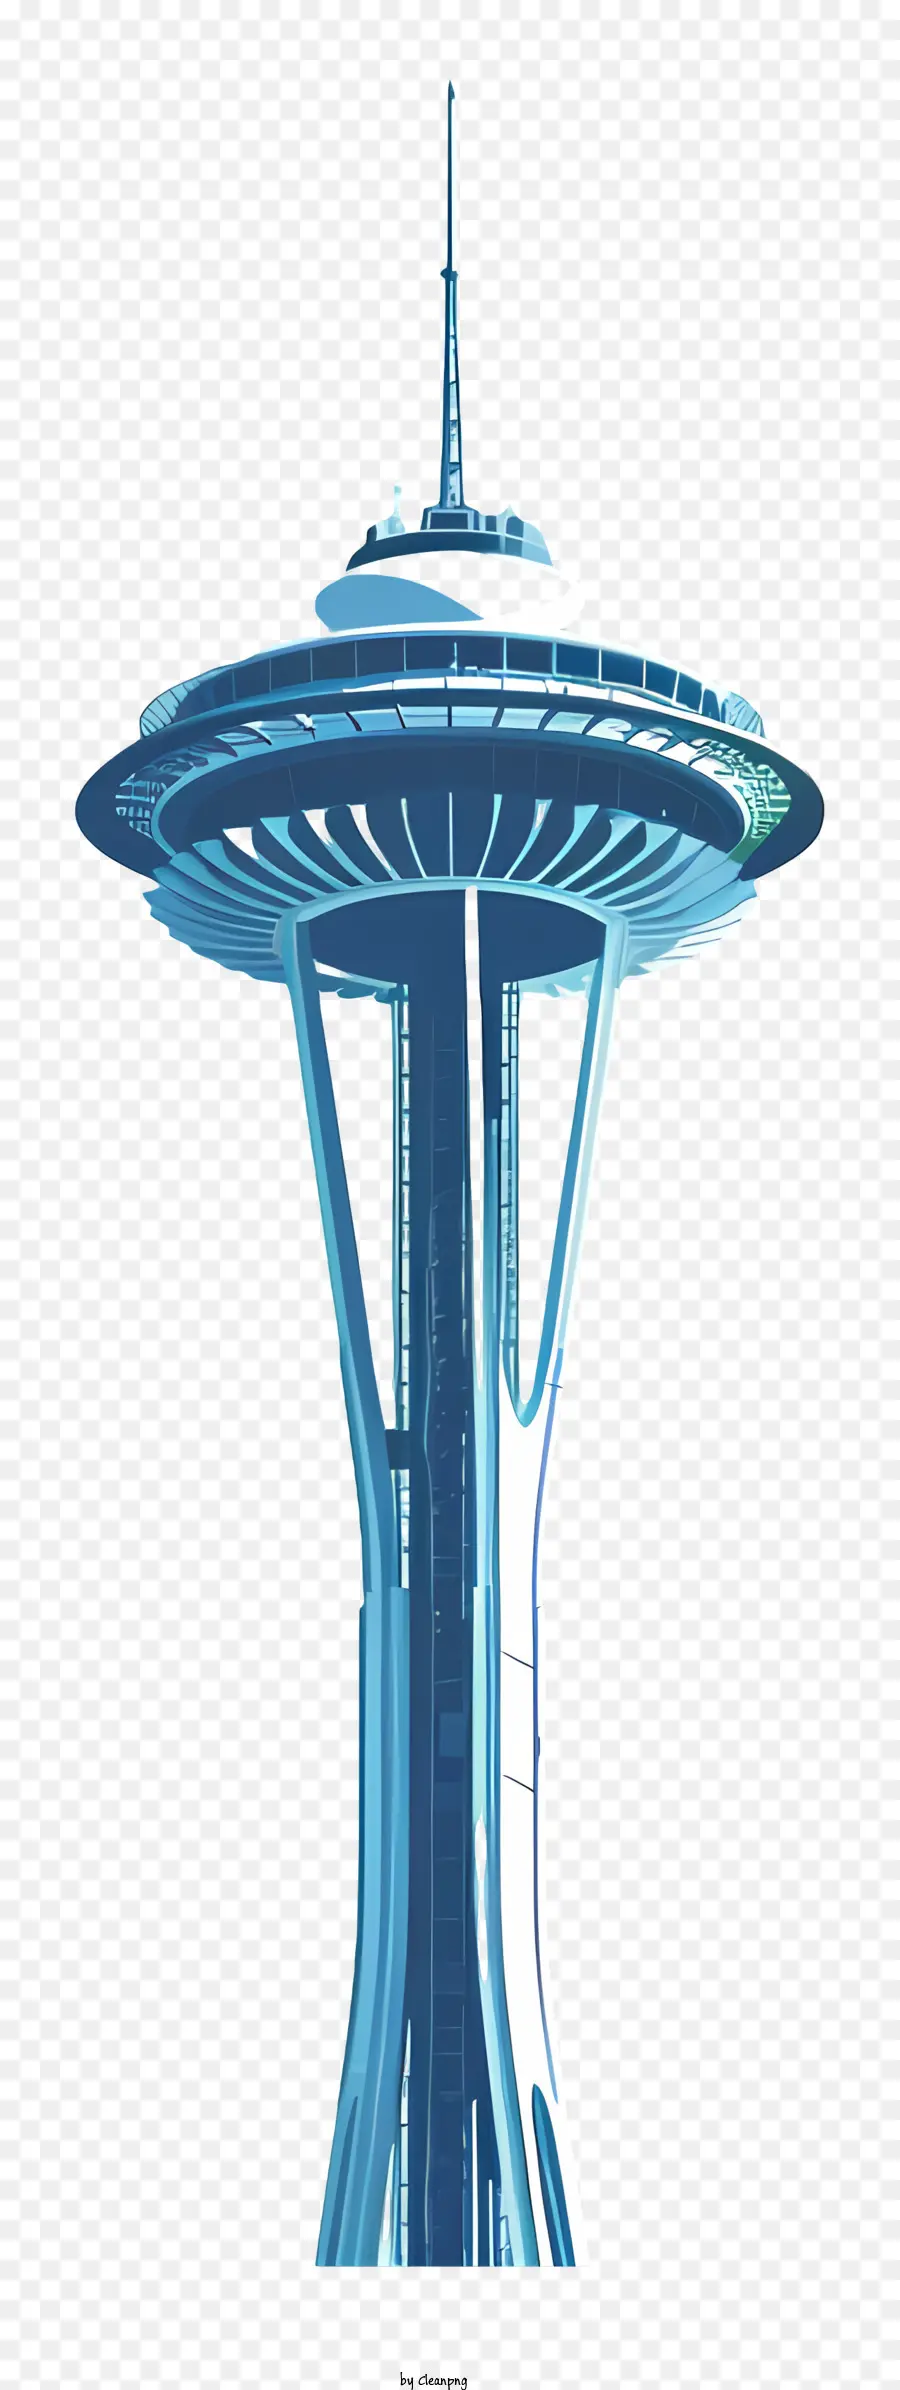 Ago spaziale Ago Space Tower Blue Spiral Design - Torre di ago di spazio blu con spirale bianca